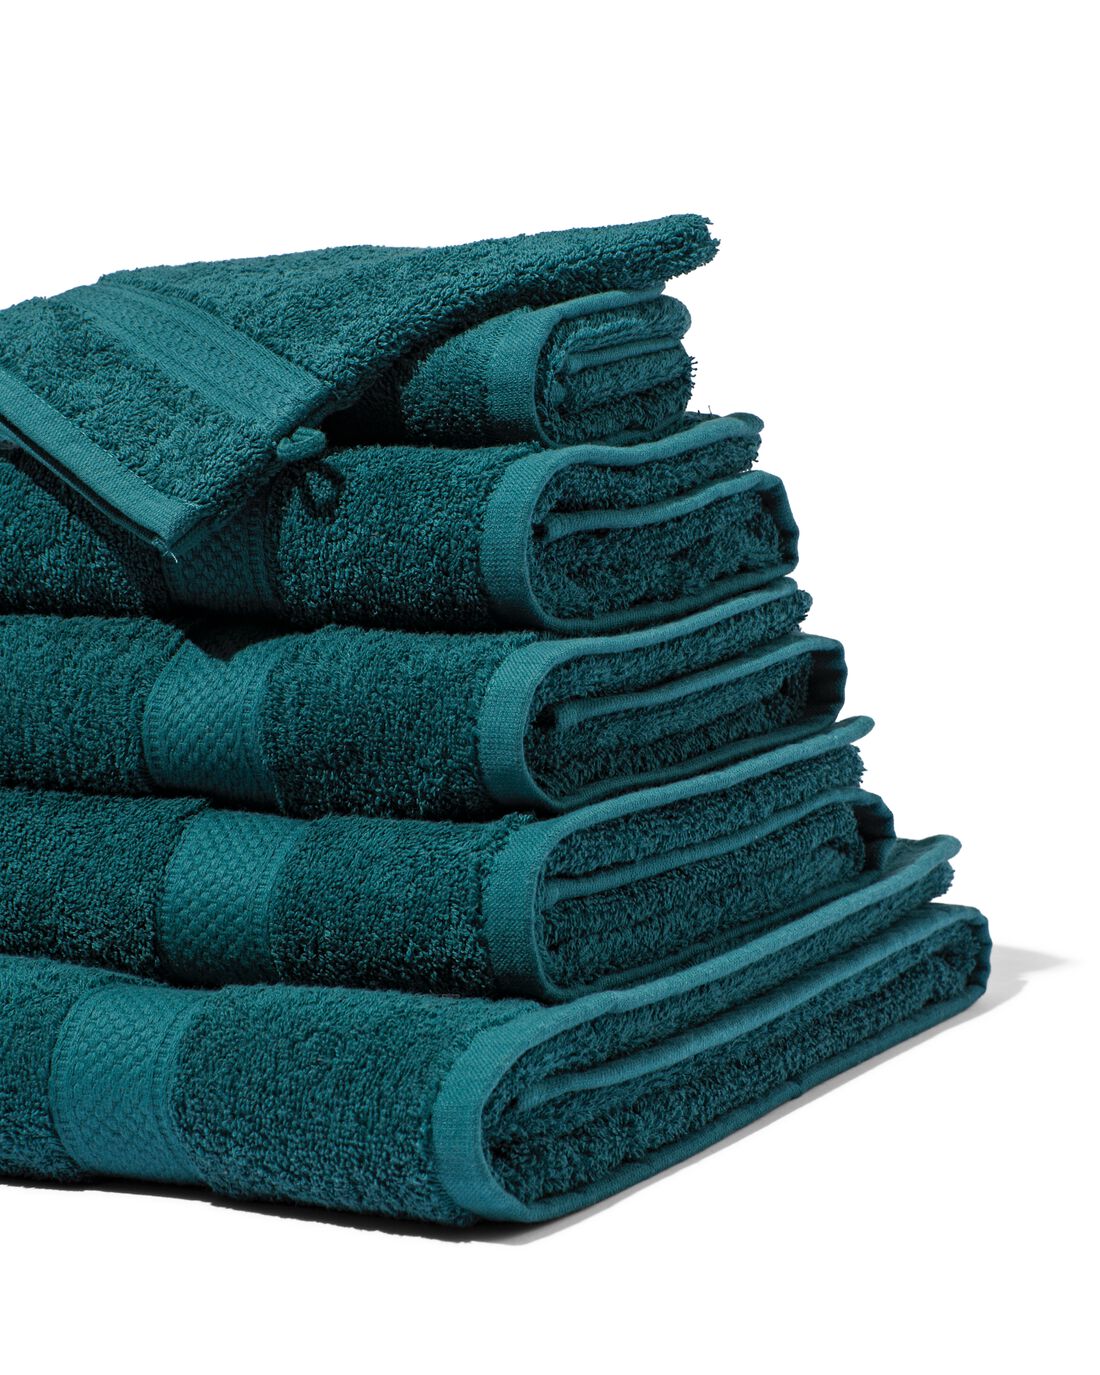 HEMA Handdoeken Zware Kwaliteit Donkergroen (donkergroen)